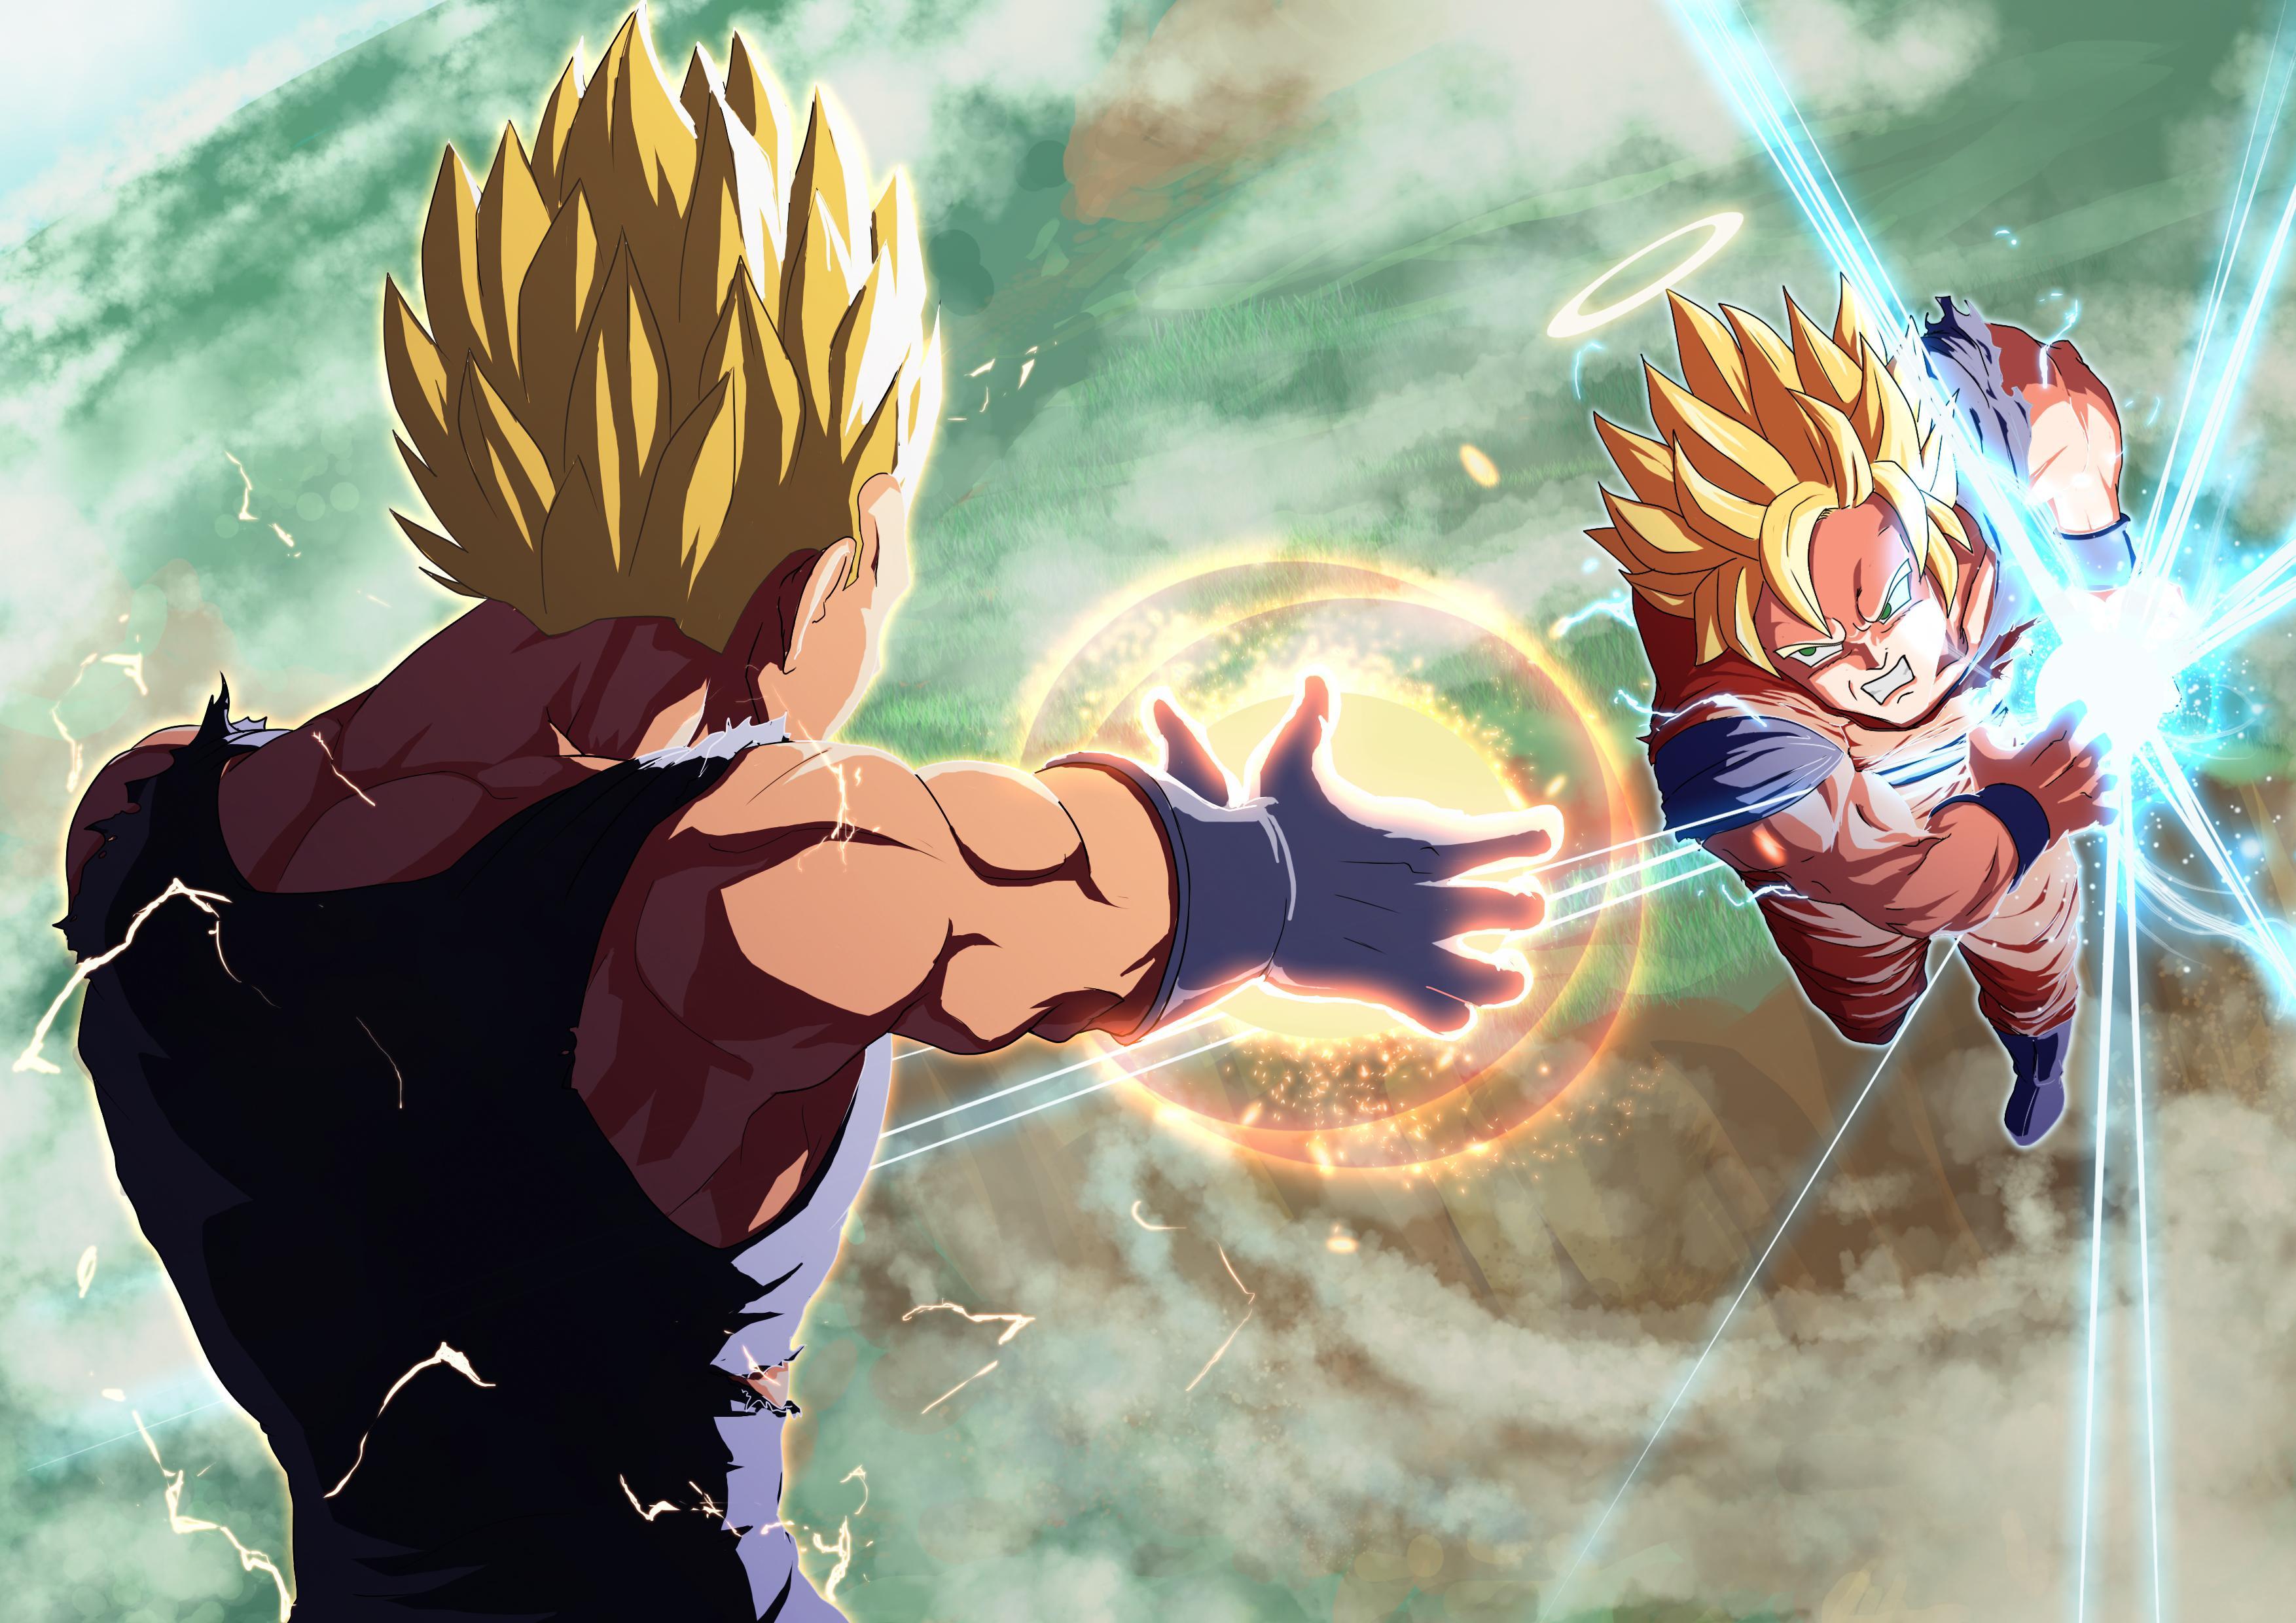 Dragon Ball Z image *Goku & Vageta* HD wallpaper and background